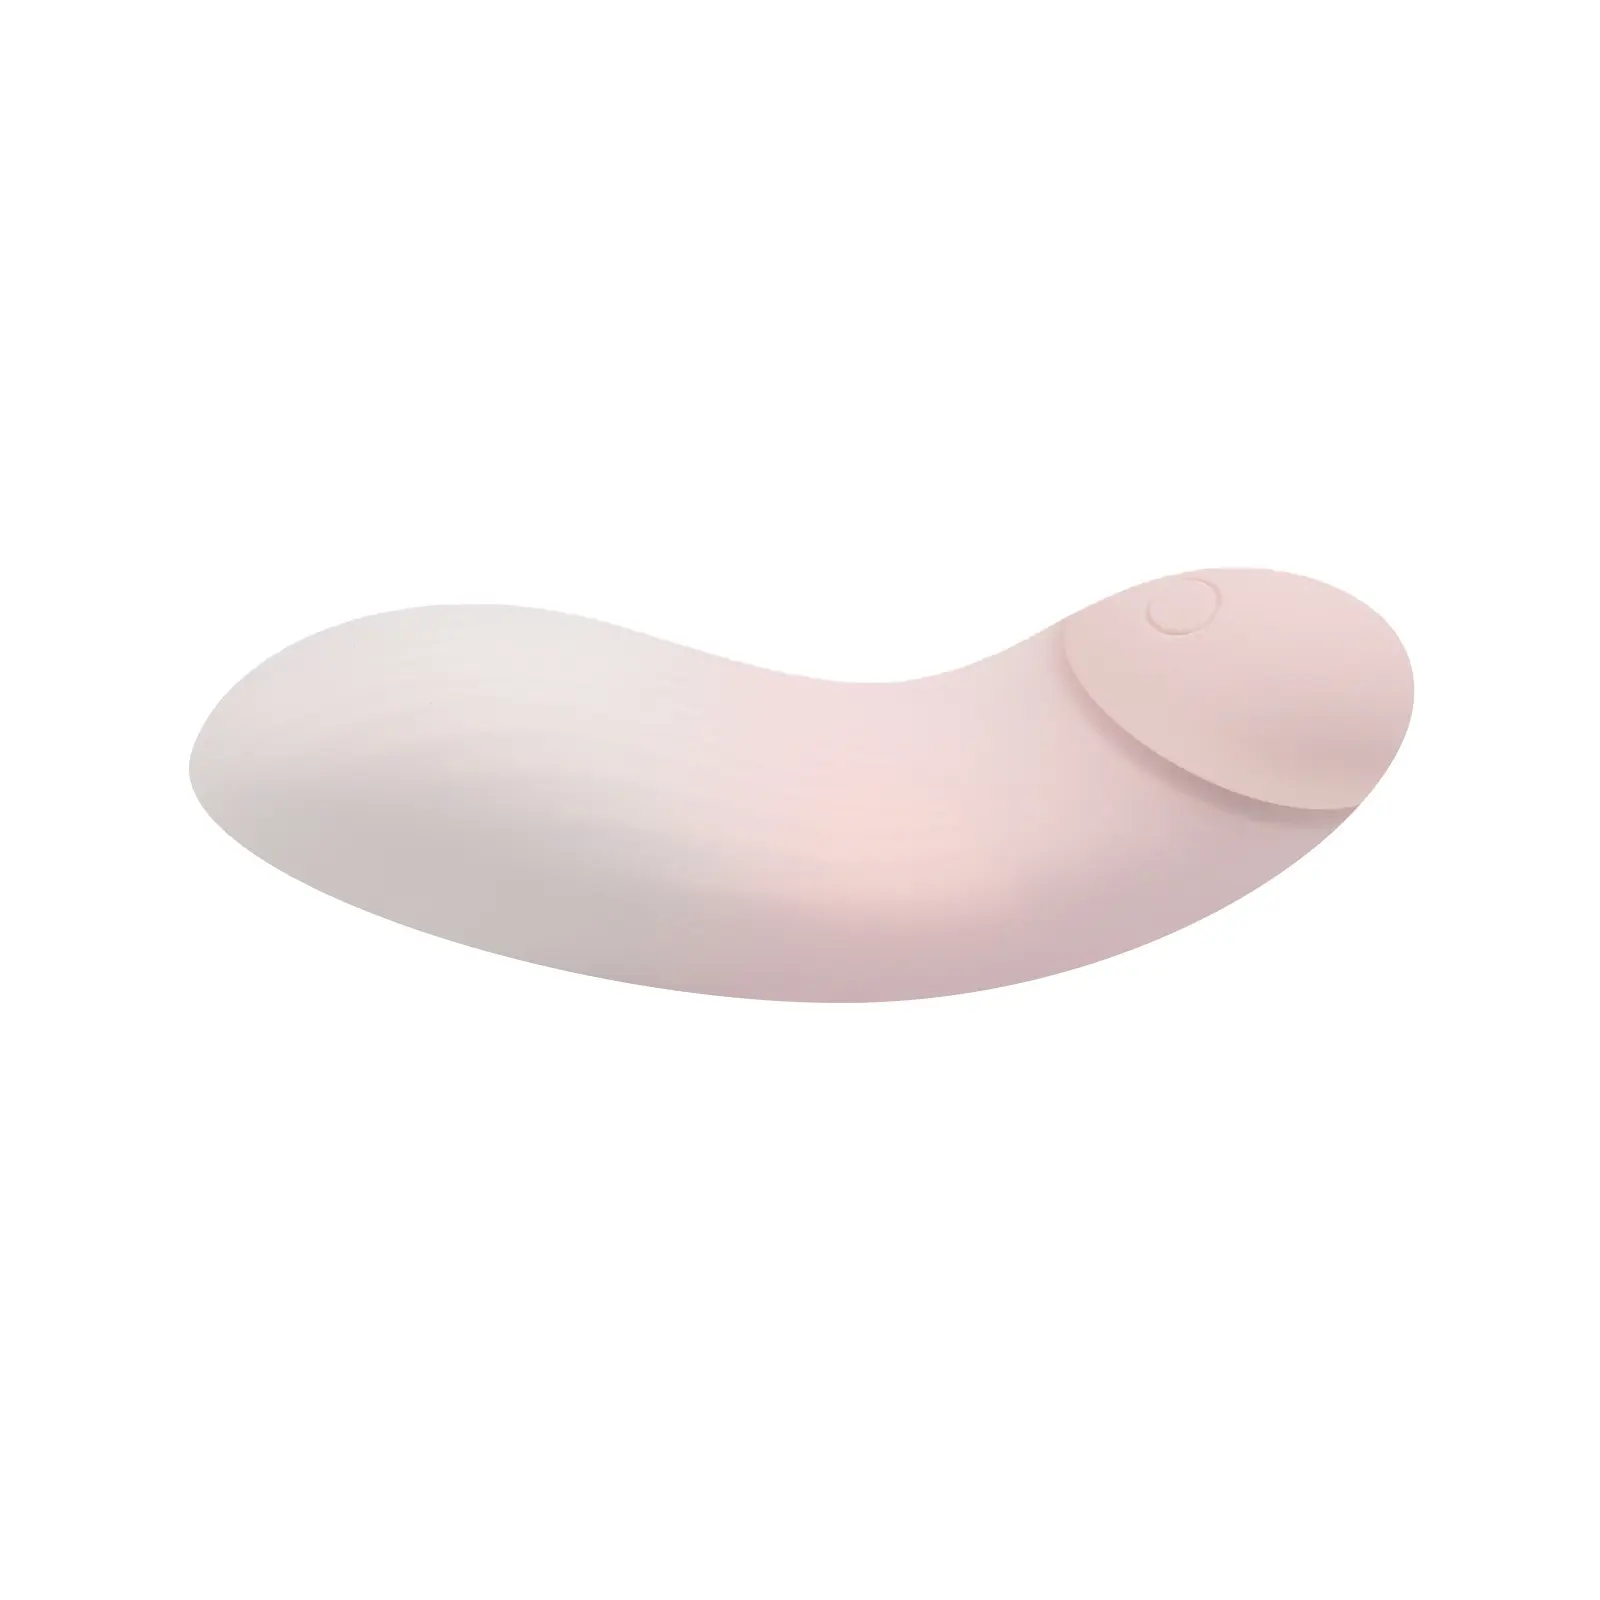 Nuevo producto, juguete sexual para adultos, venta al por mayor, vagina animal